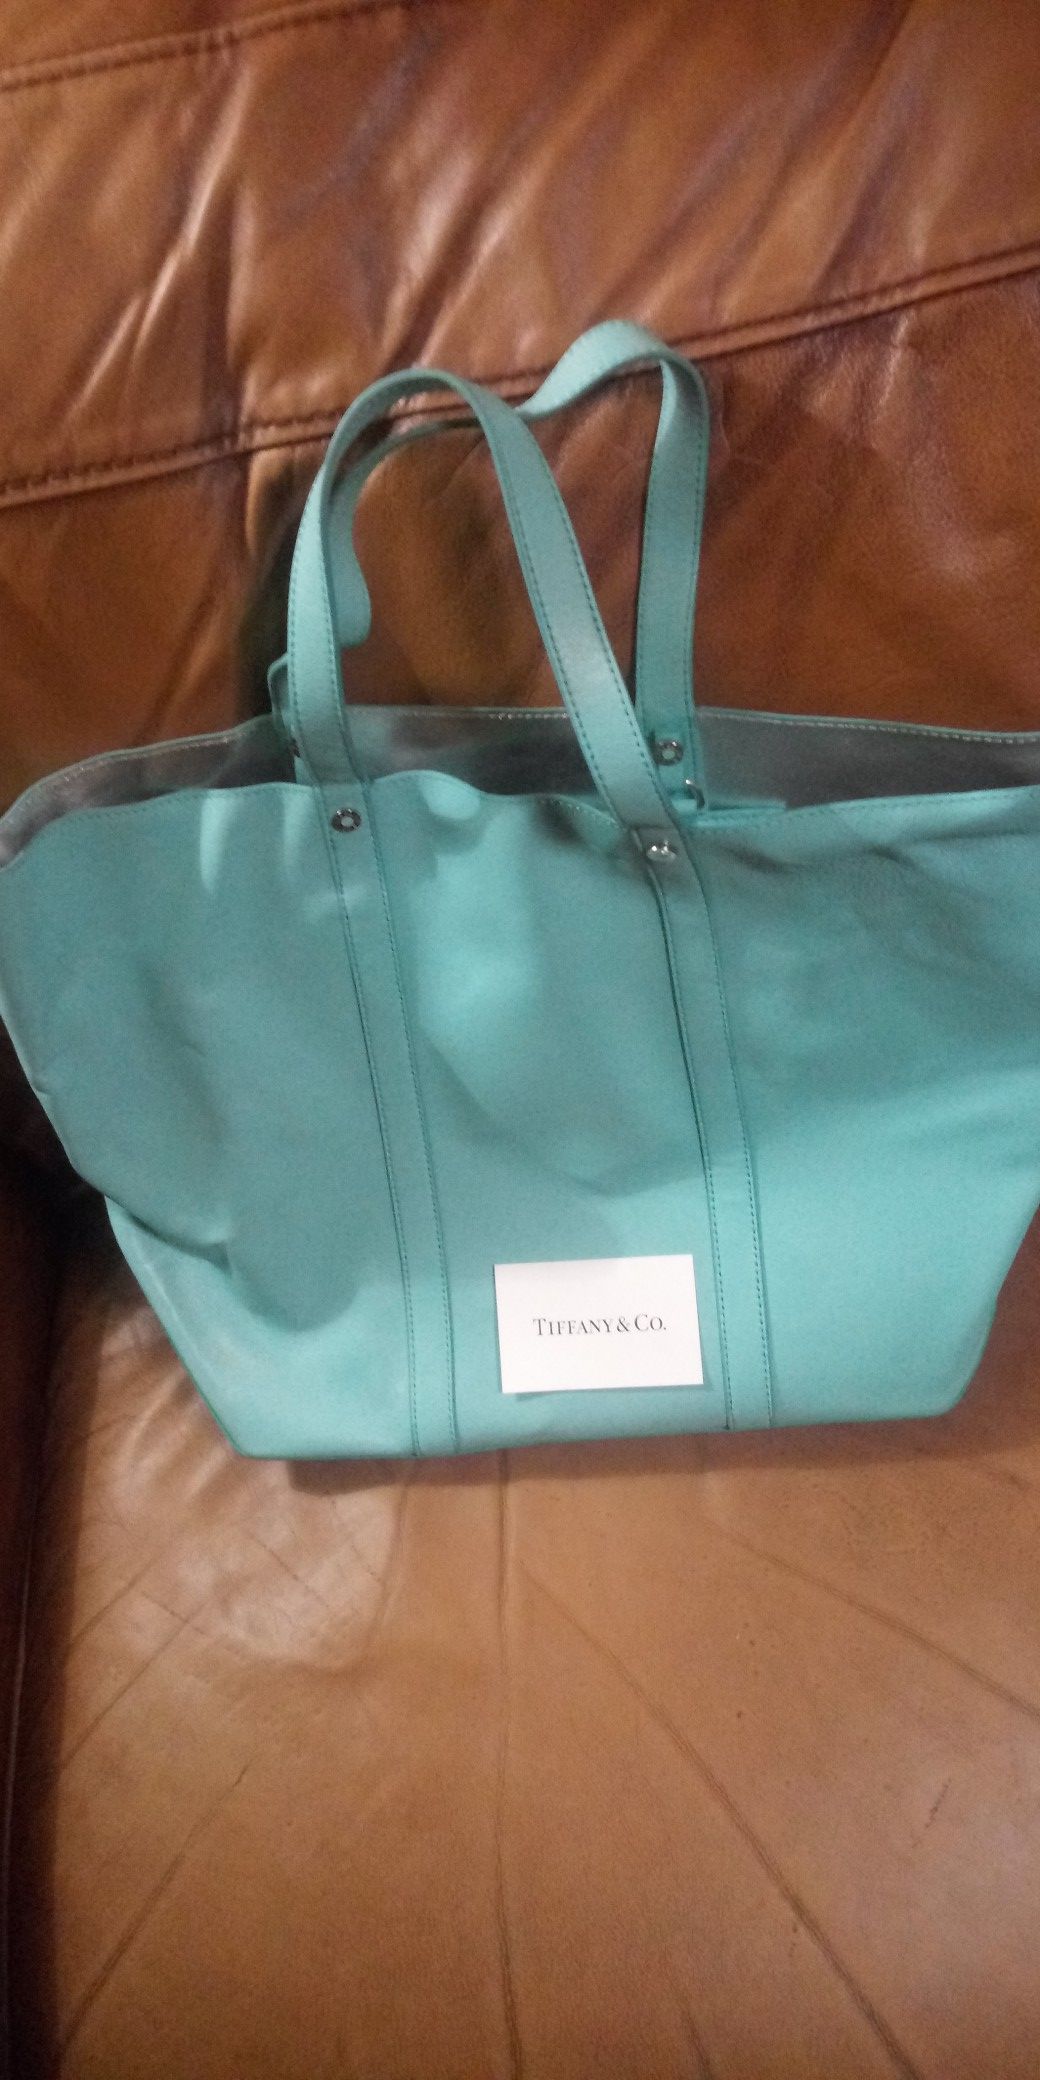 Tiffany and Company purse